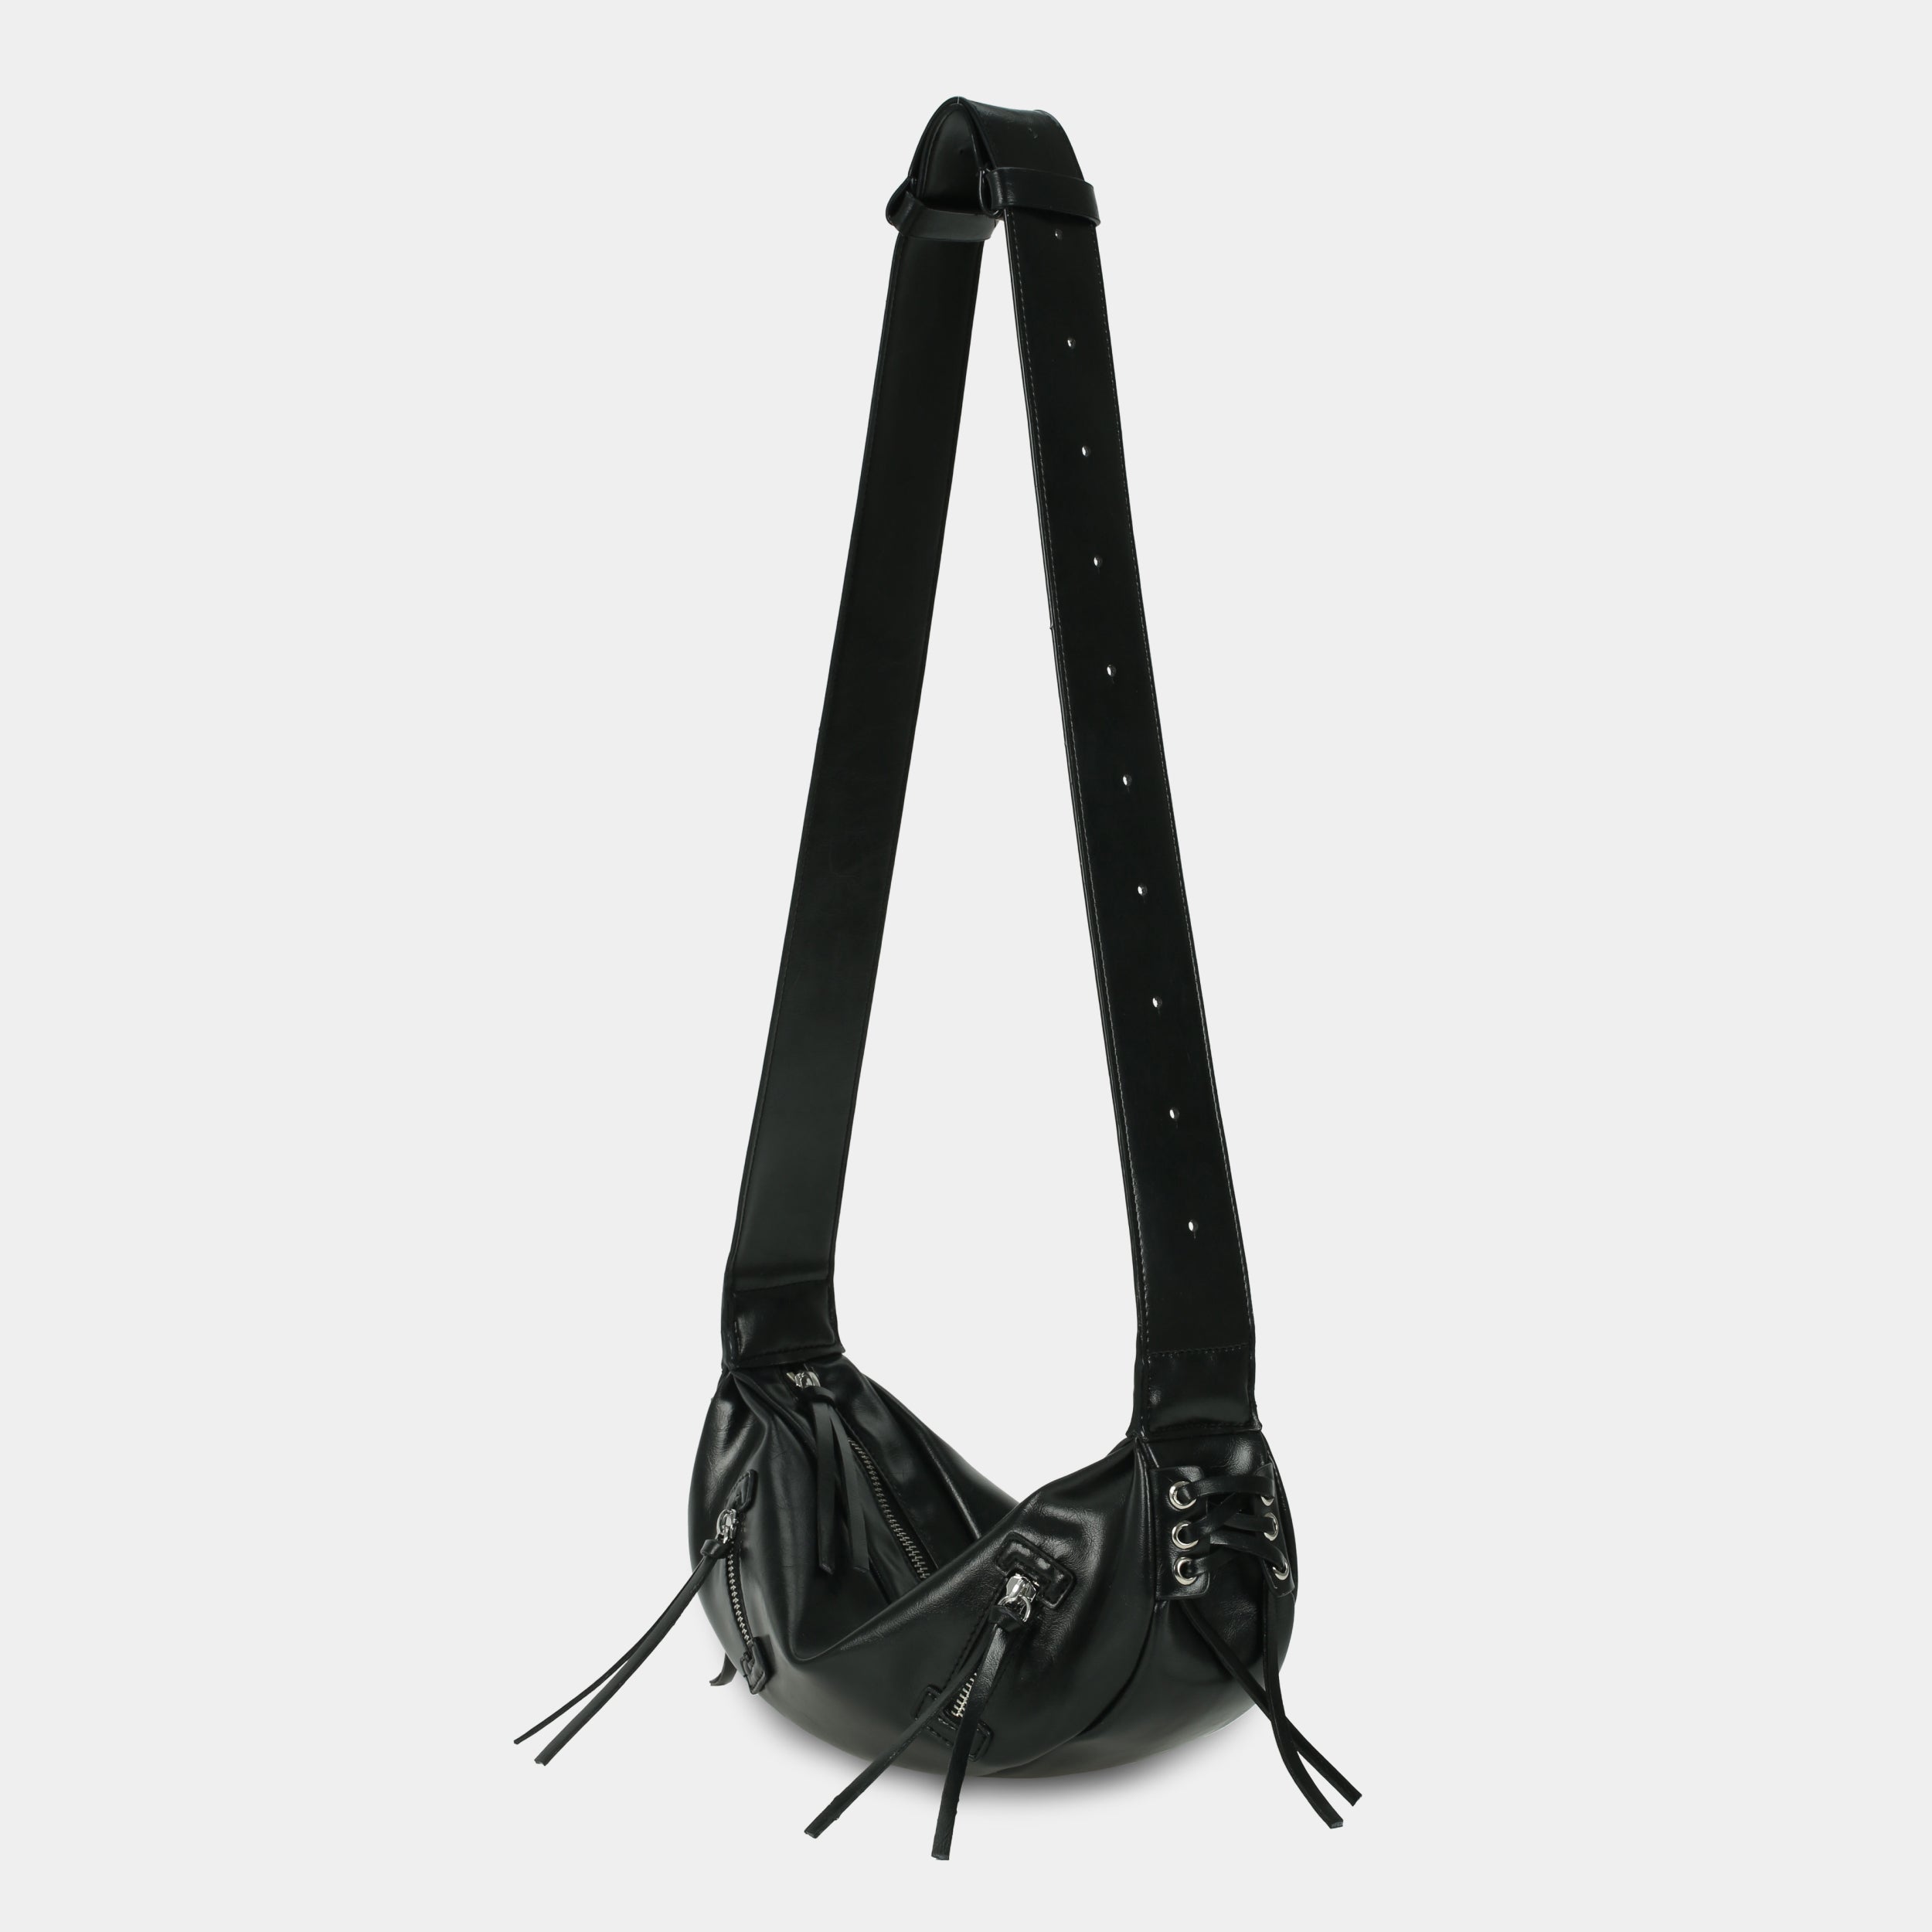 Túi xách LACE size lớn (M) màu đen